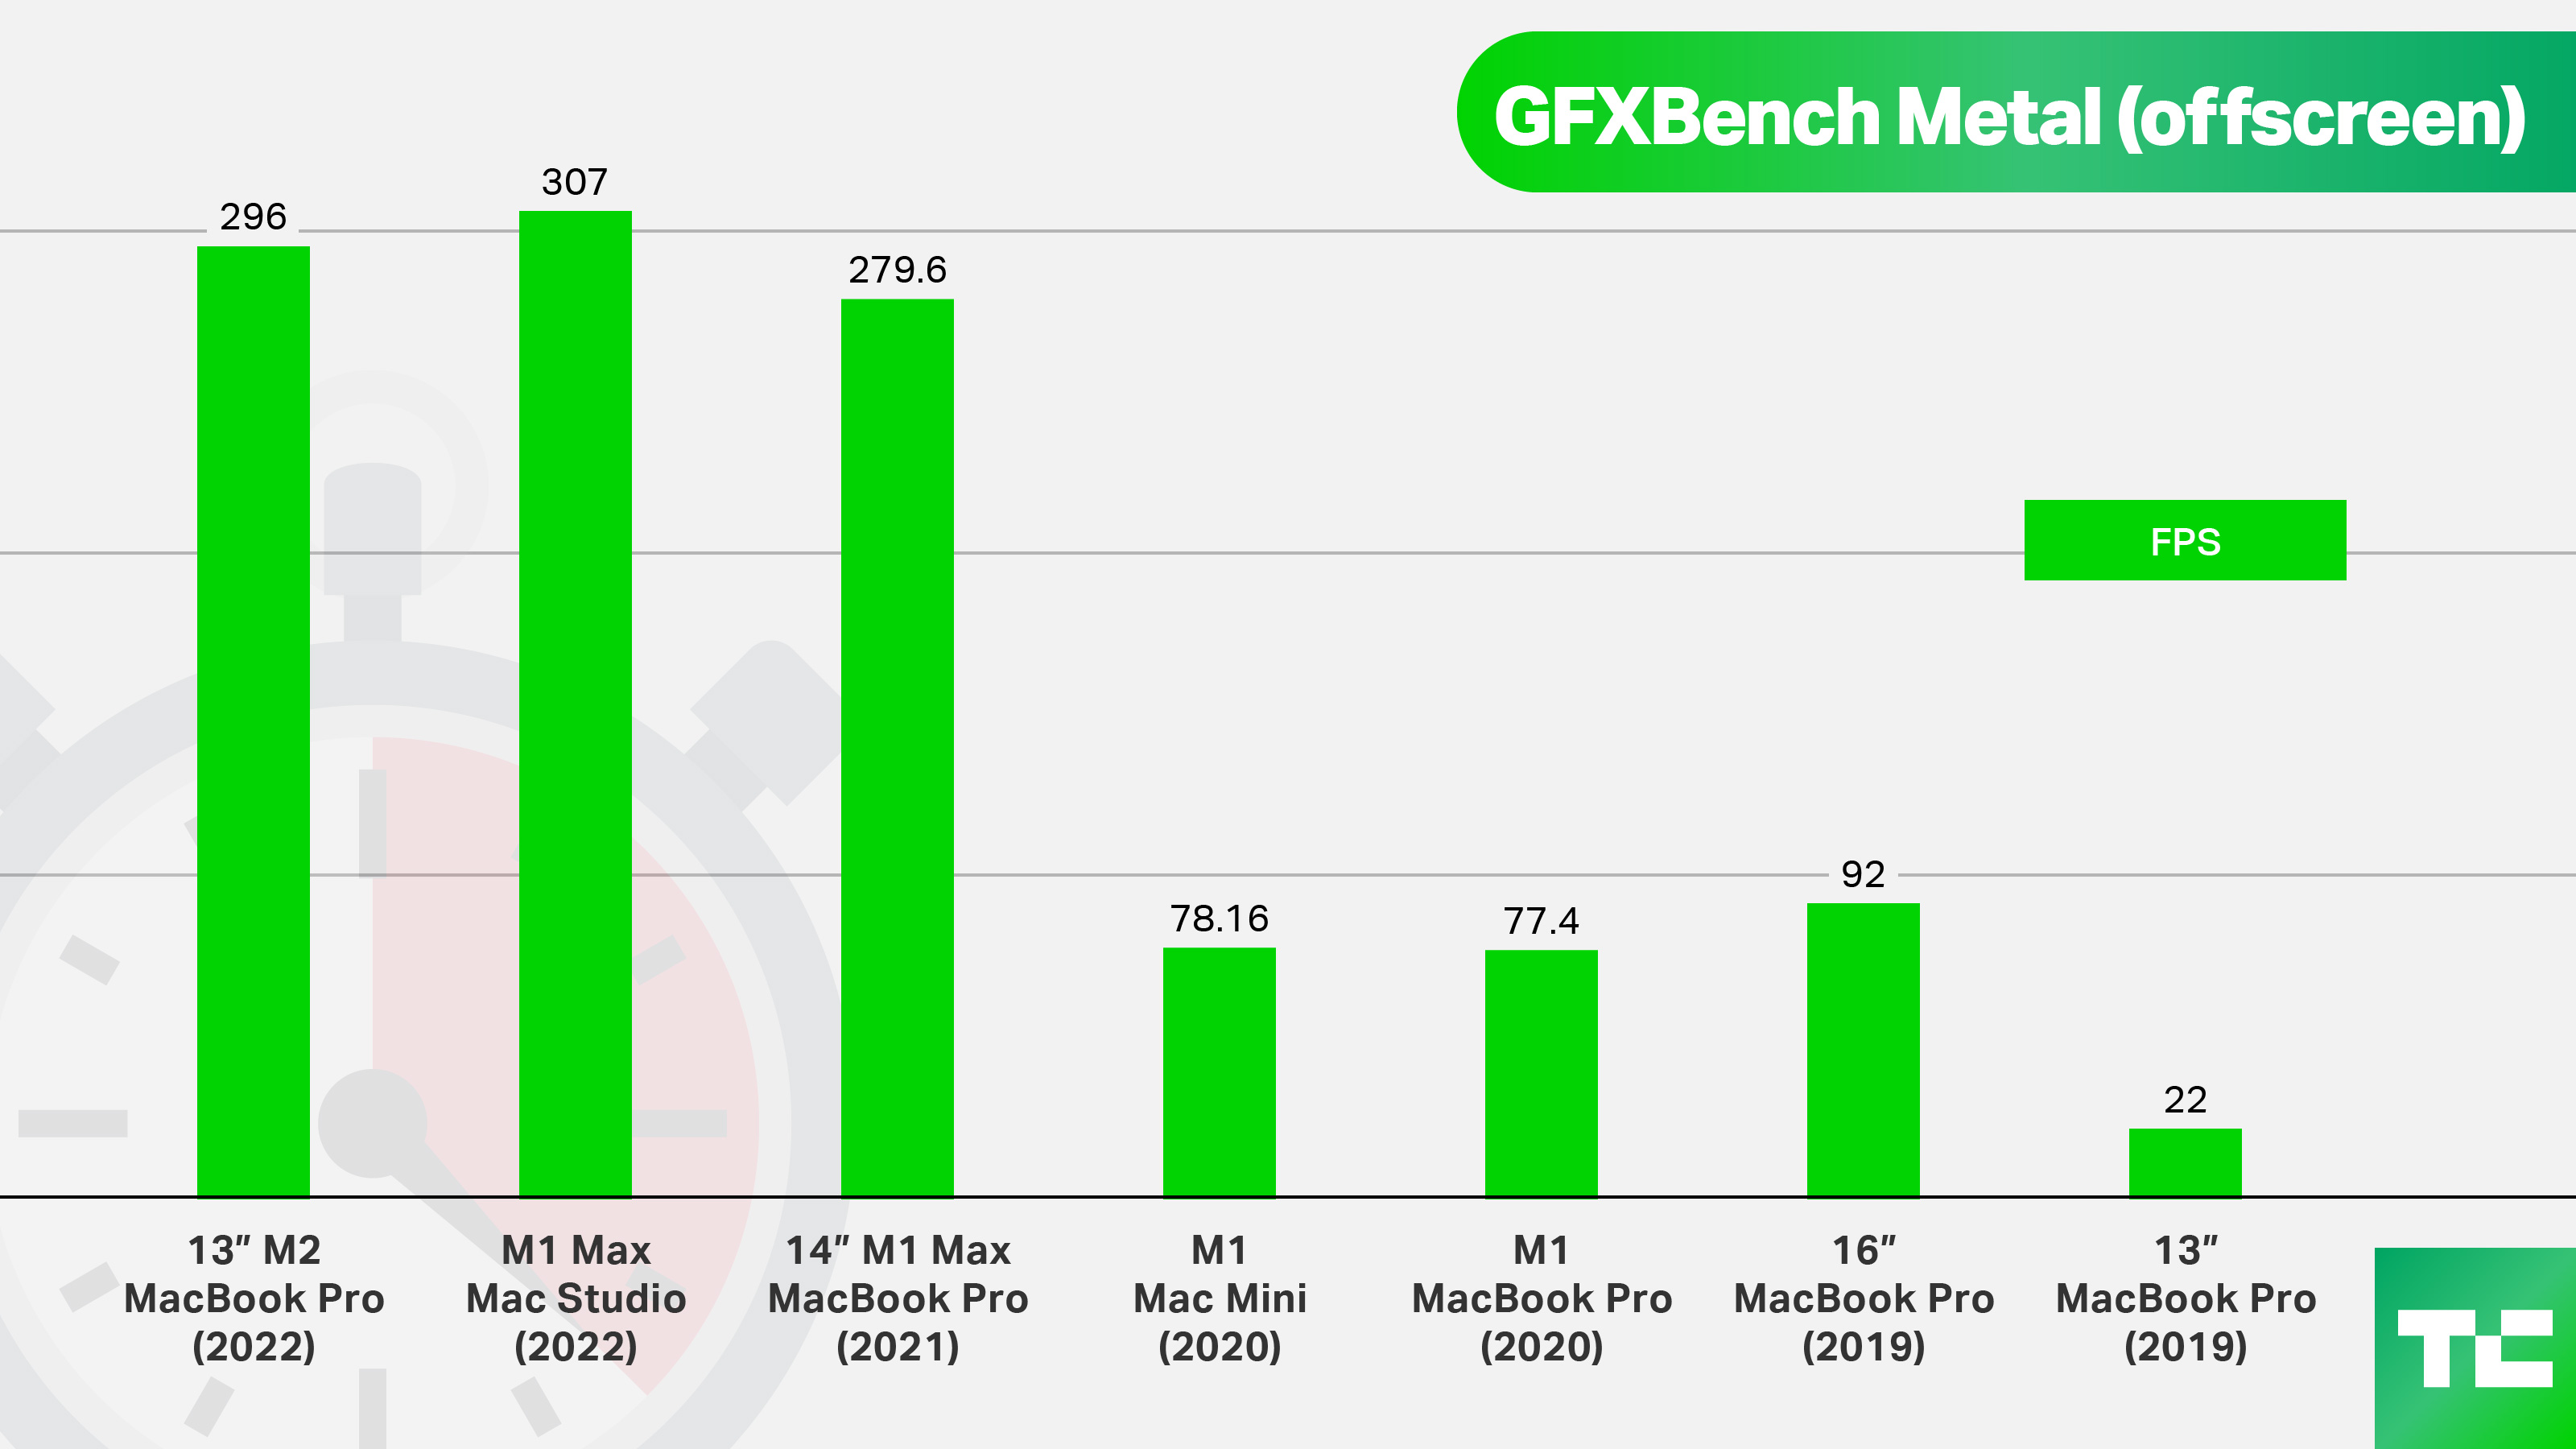 GFXBench Metal (ekran dışı).  13" M2 MacBook Pro (2022): 296